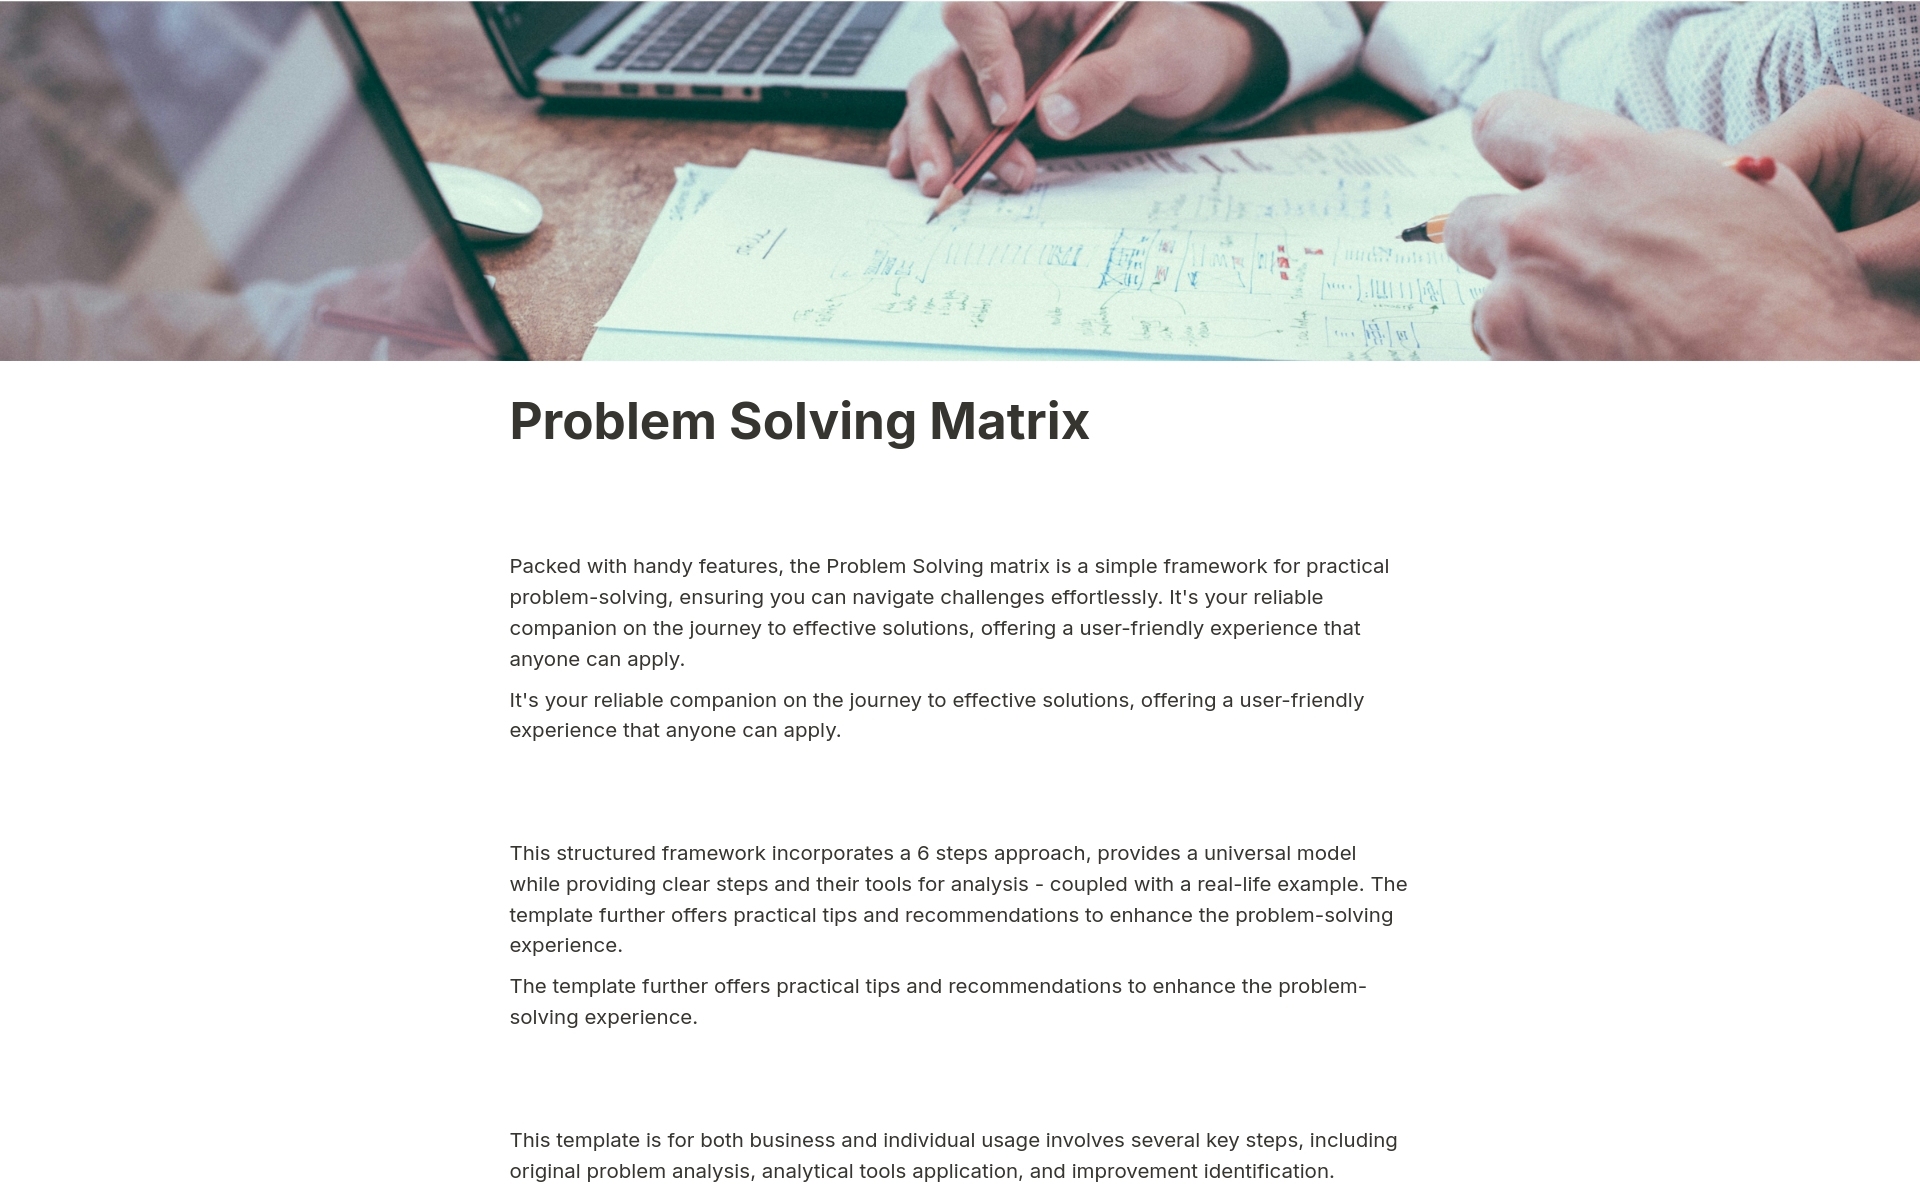 Uma prévia do modelo para Problem Solving Matrix